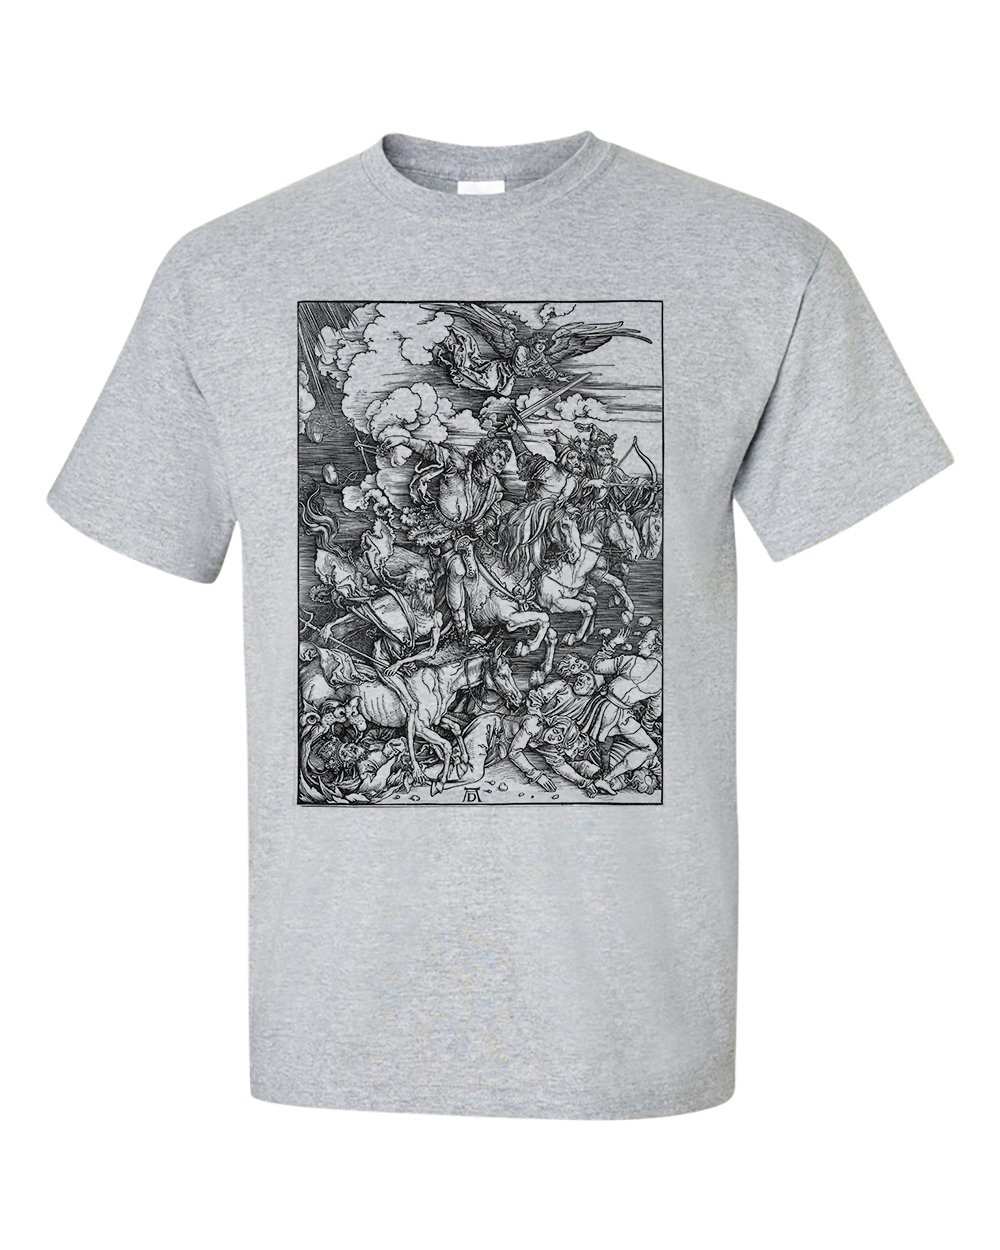 Four Horsemen of the Apocalypse by Albrecht Durer T-Shirt